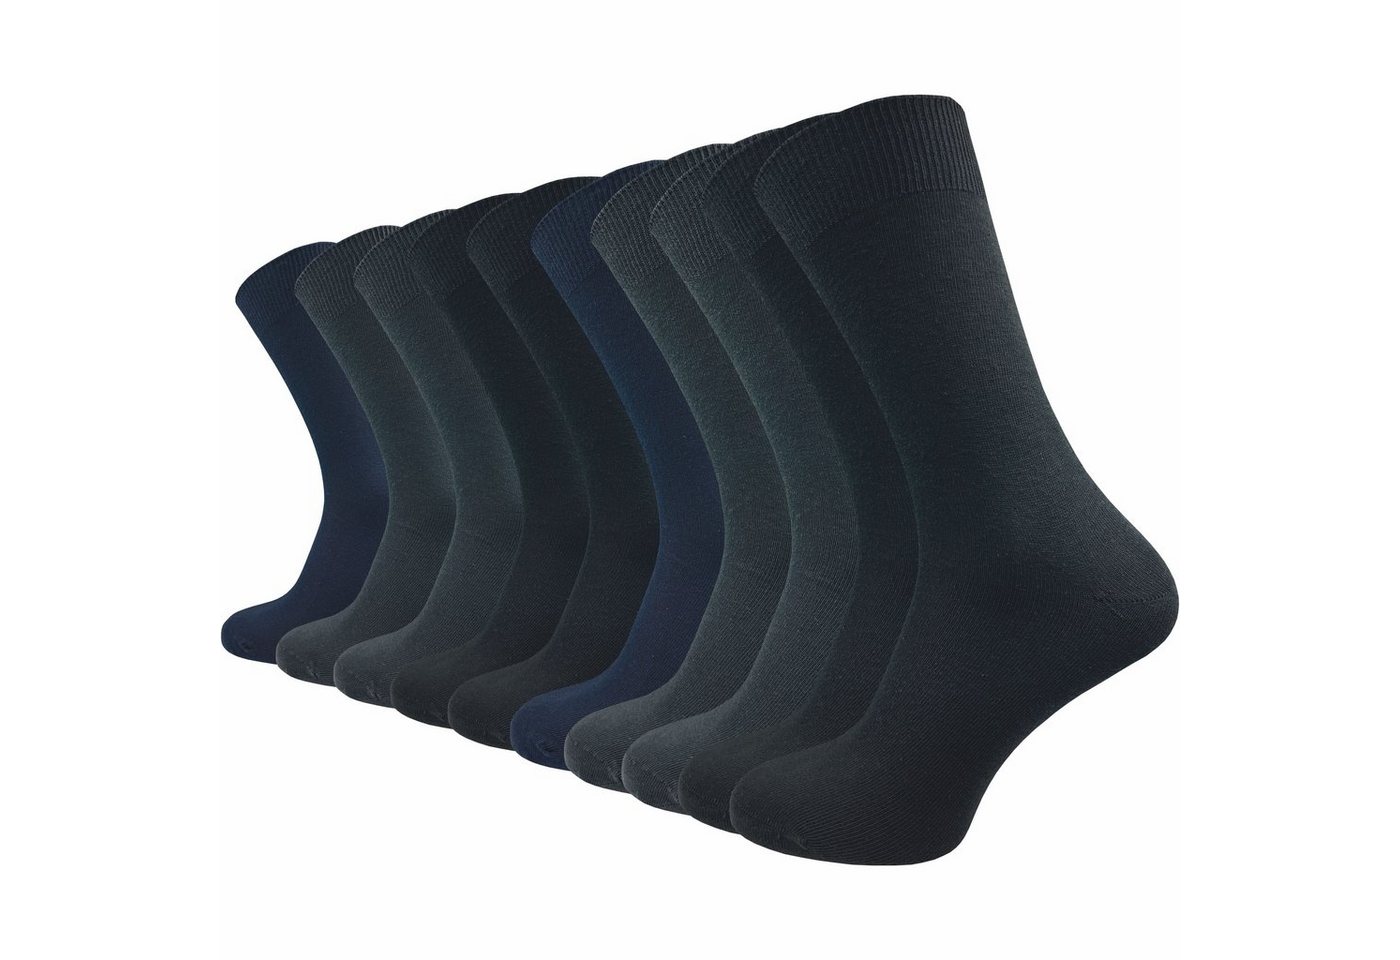 GAWILO Basicsocken aus 100% Baumwolle für Herren in 3 Farbkombinationen ohne Gummidruck (10 Paar) natur-, blau- & dunkle Töne - ideale Ergänzung Ihres Socken Sortiments von GAWILO